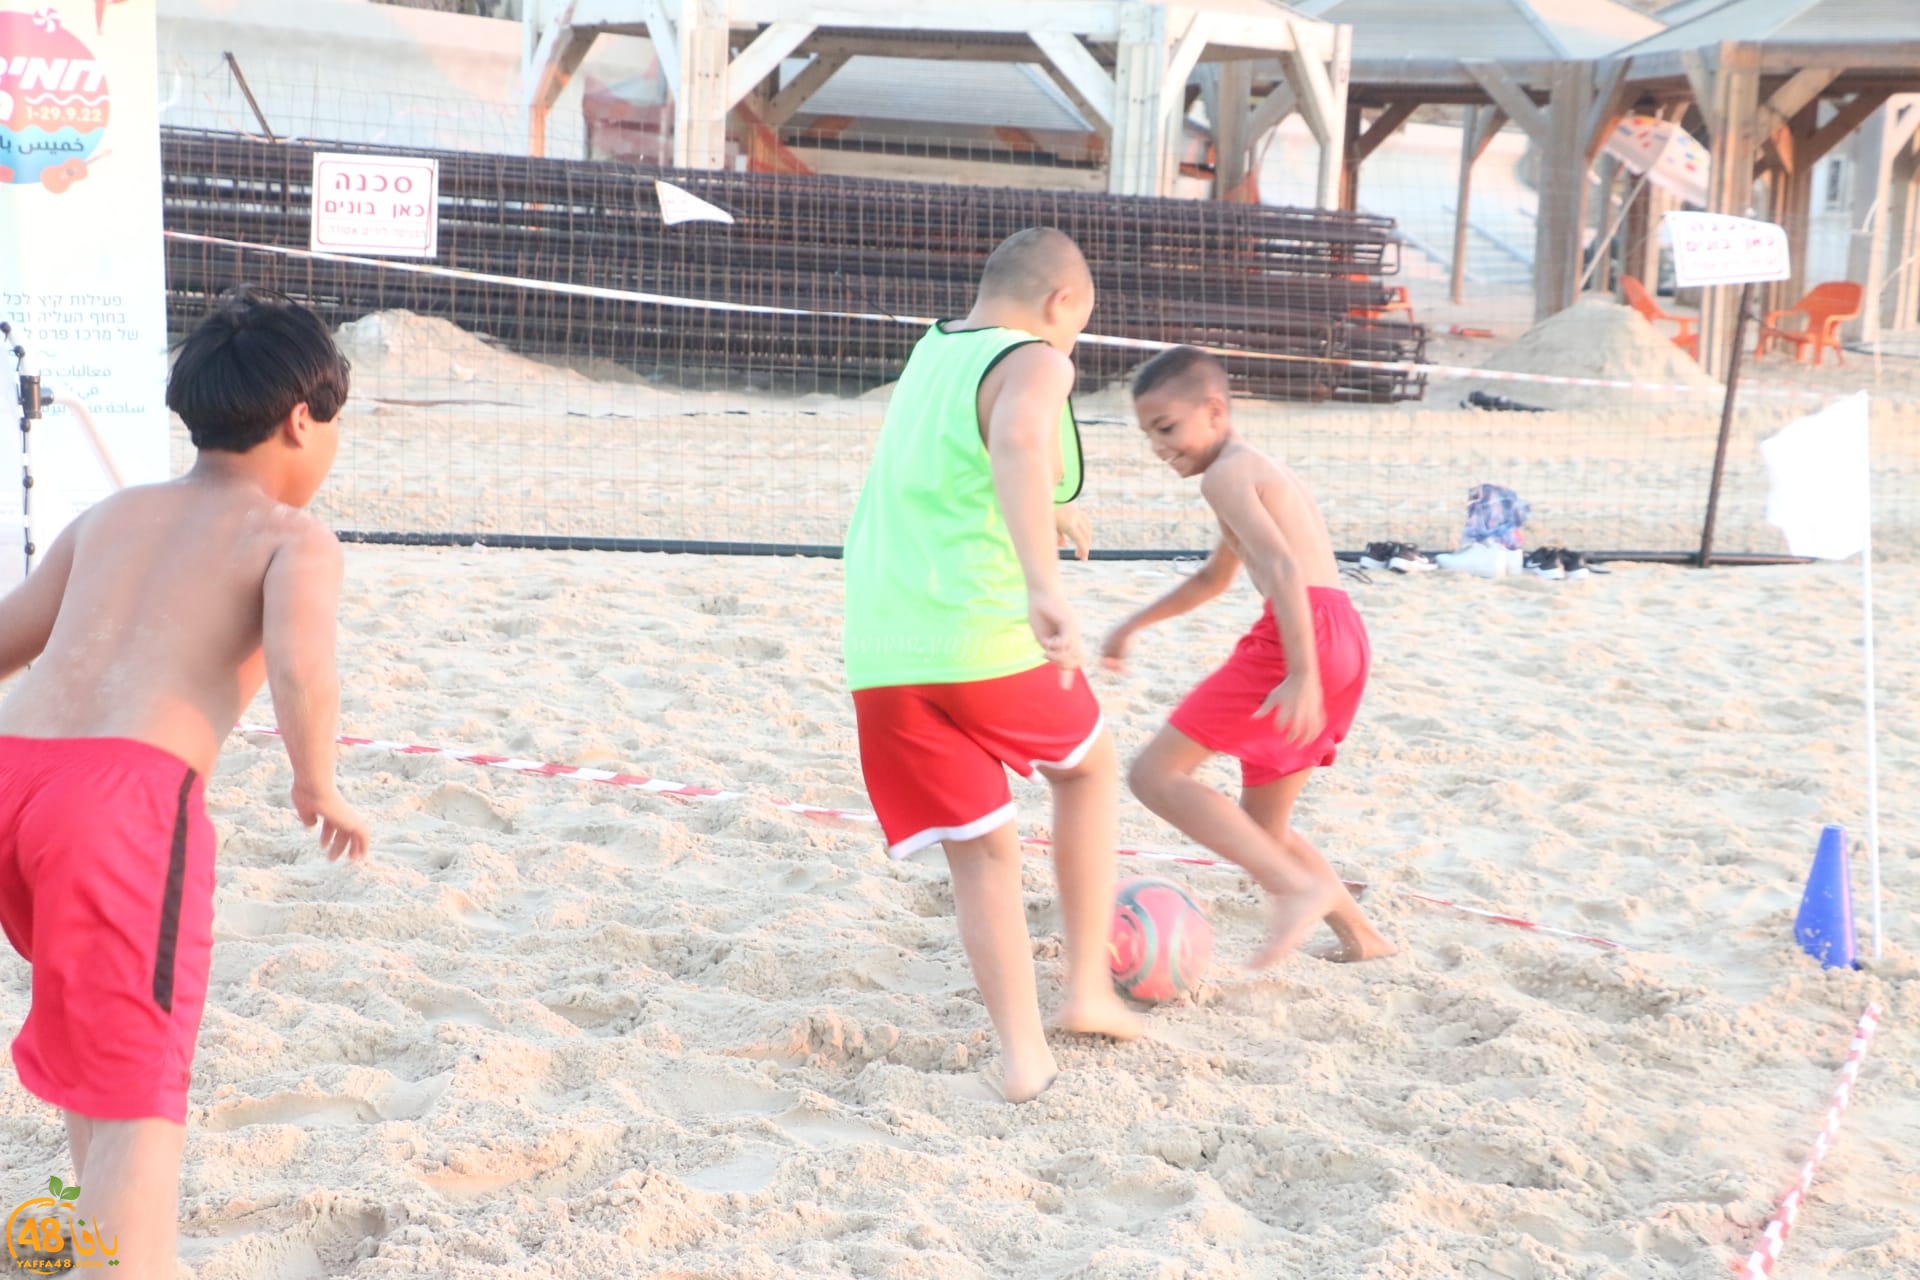 ألعاب ممتعة ضمن فعاليات خميس بالريف على شاطئ بحر يافا